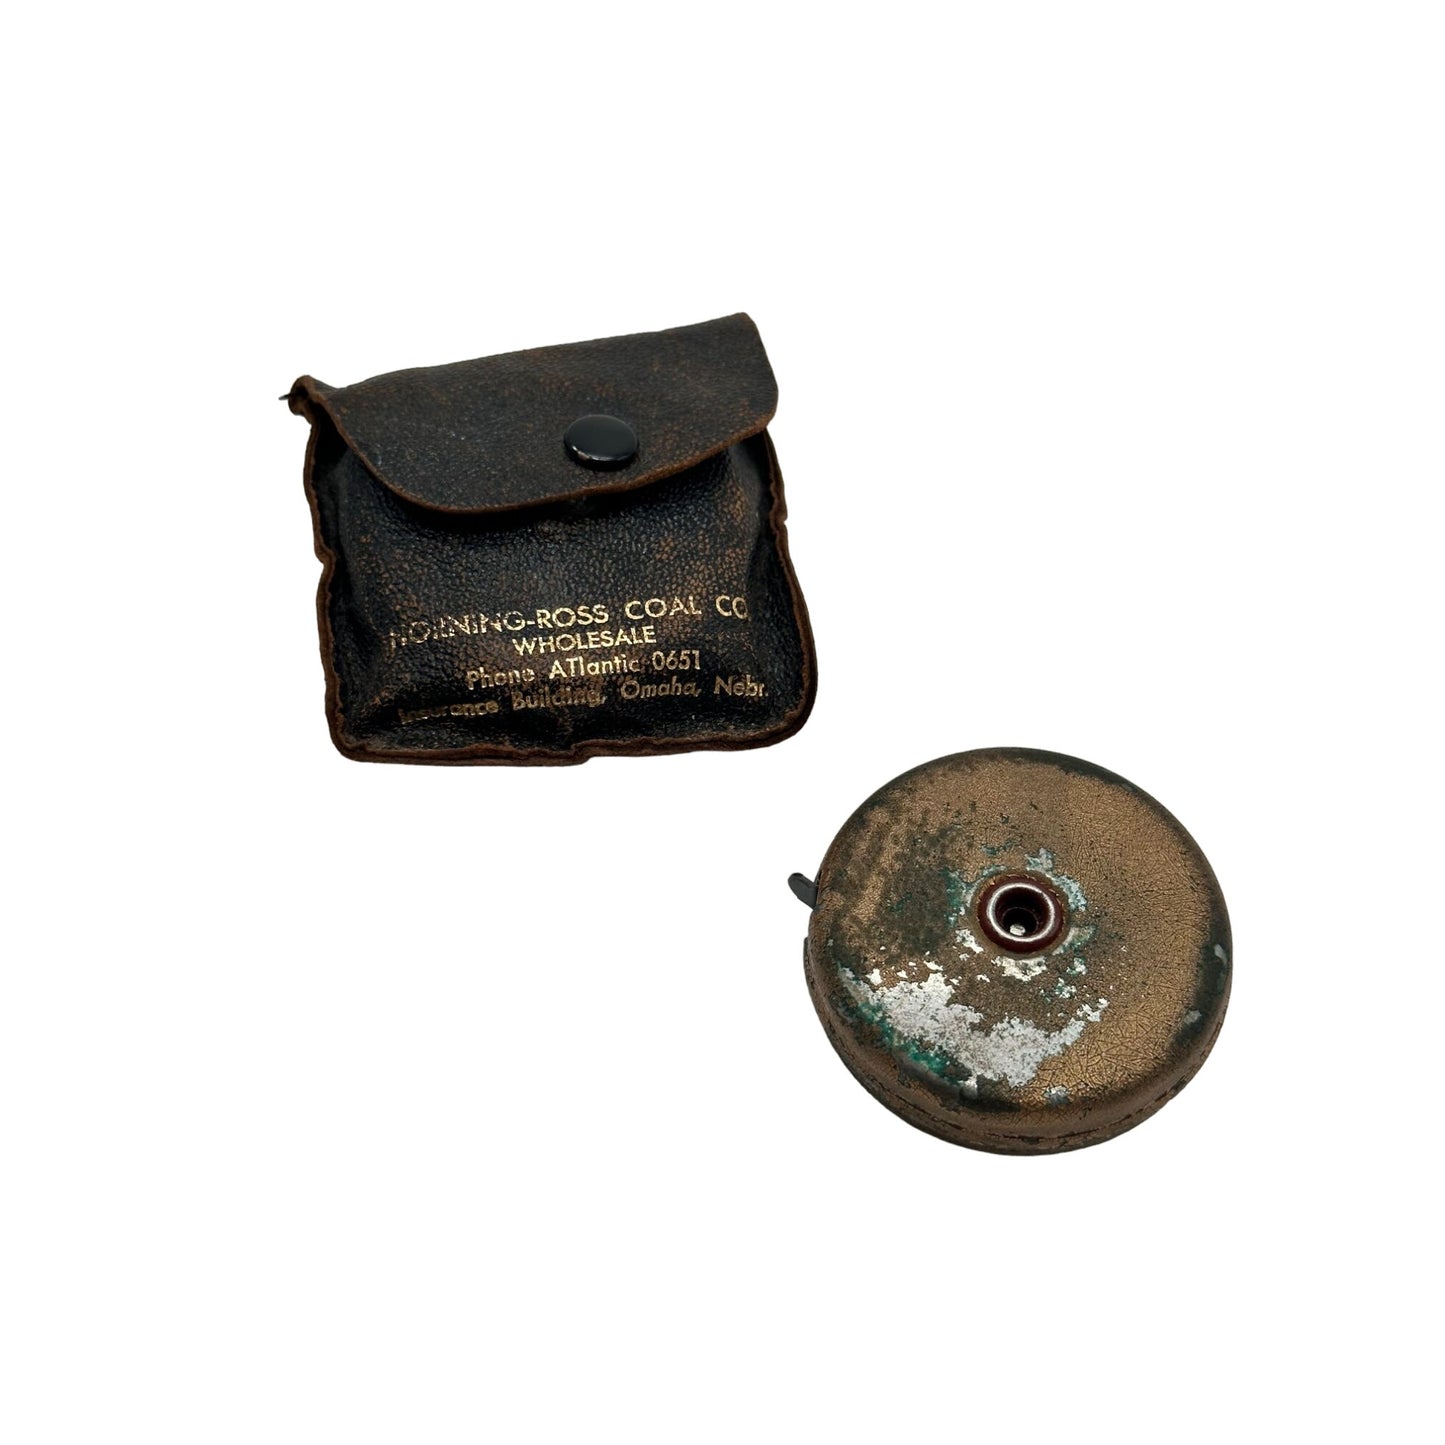 Vintage Metal Tape Measure Collectable Work Tools Made in Omaha Nebraska